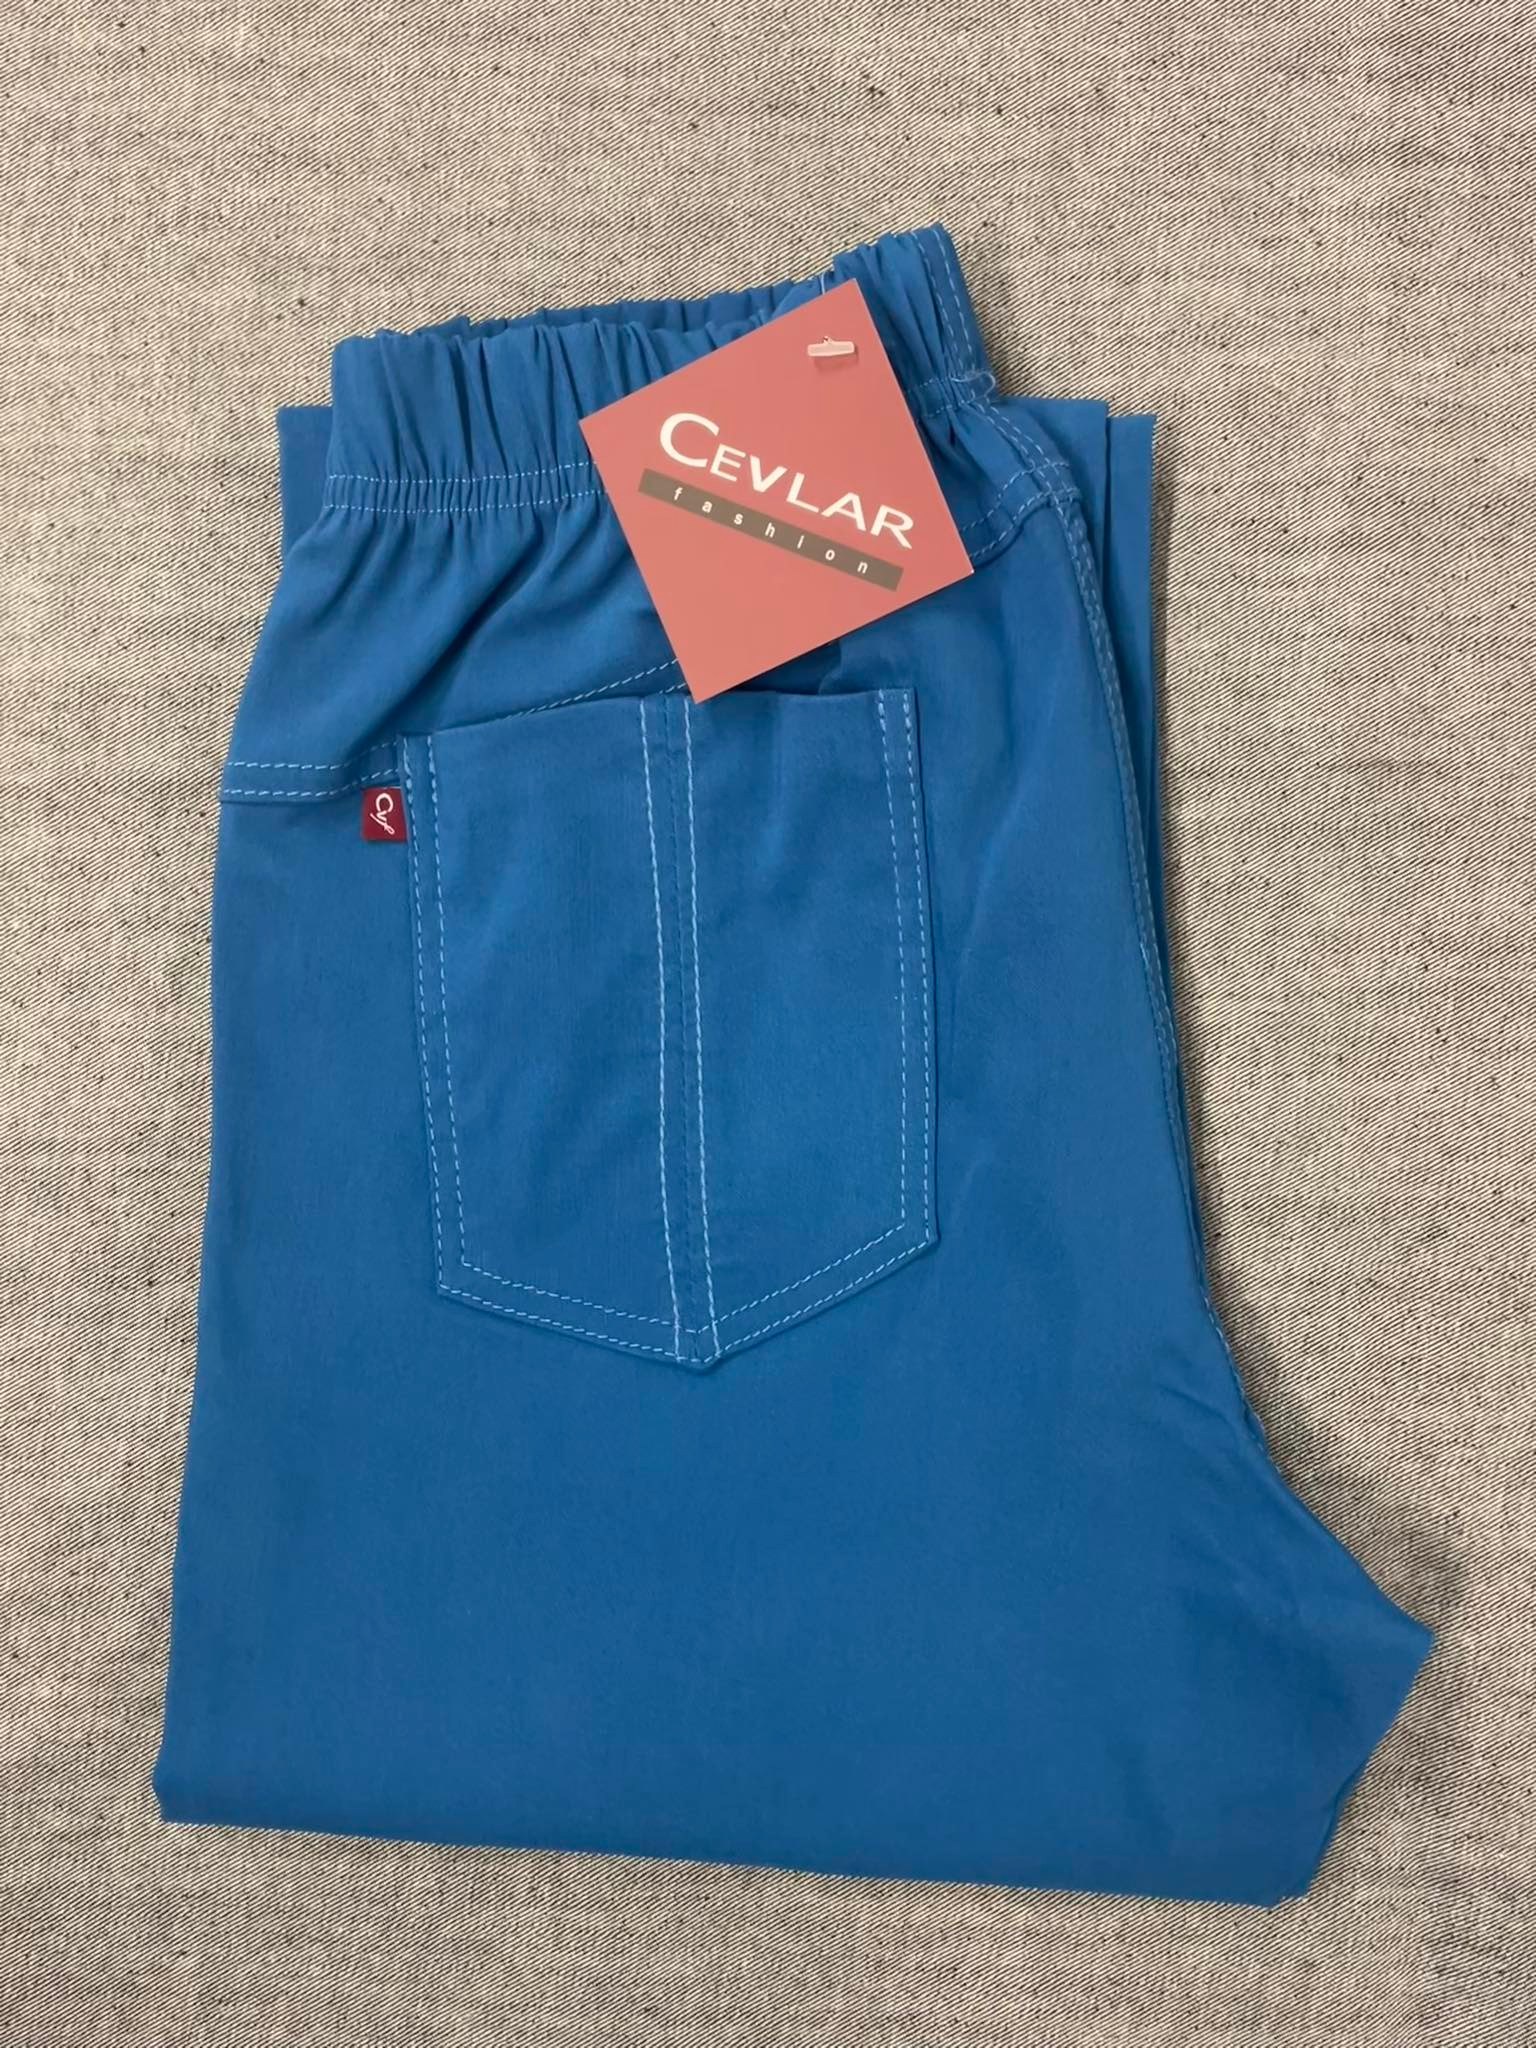 Spodnie z bengaliny Cevlar B02 prosta nogawka kolor petrol